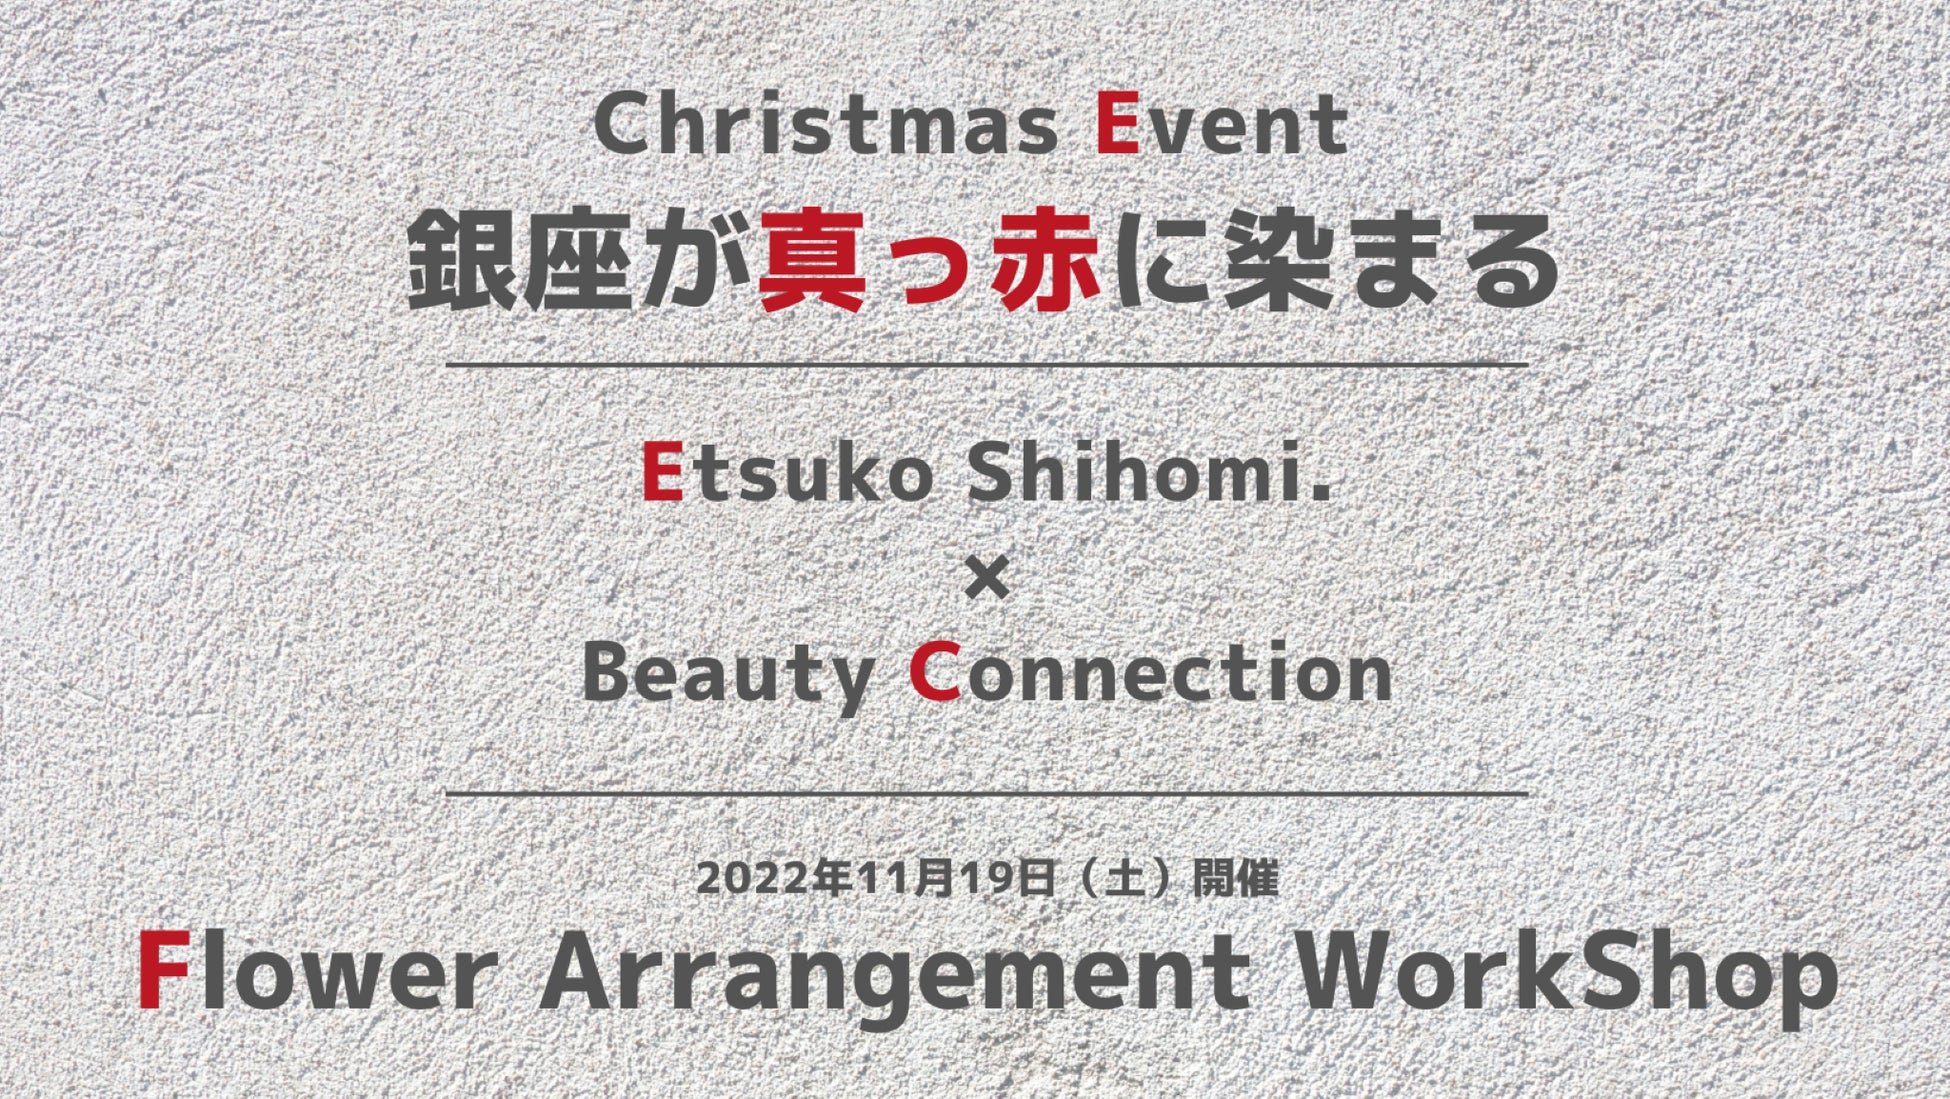 「花創作家の志穂美悦子さん×Beauty Connection」2022年11月19日。その日、クリスマスの準備でにぎわう銀座が、真っ赤に染まる